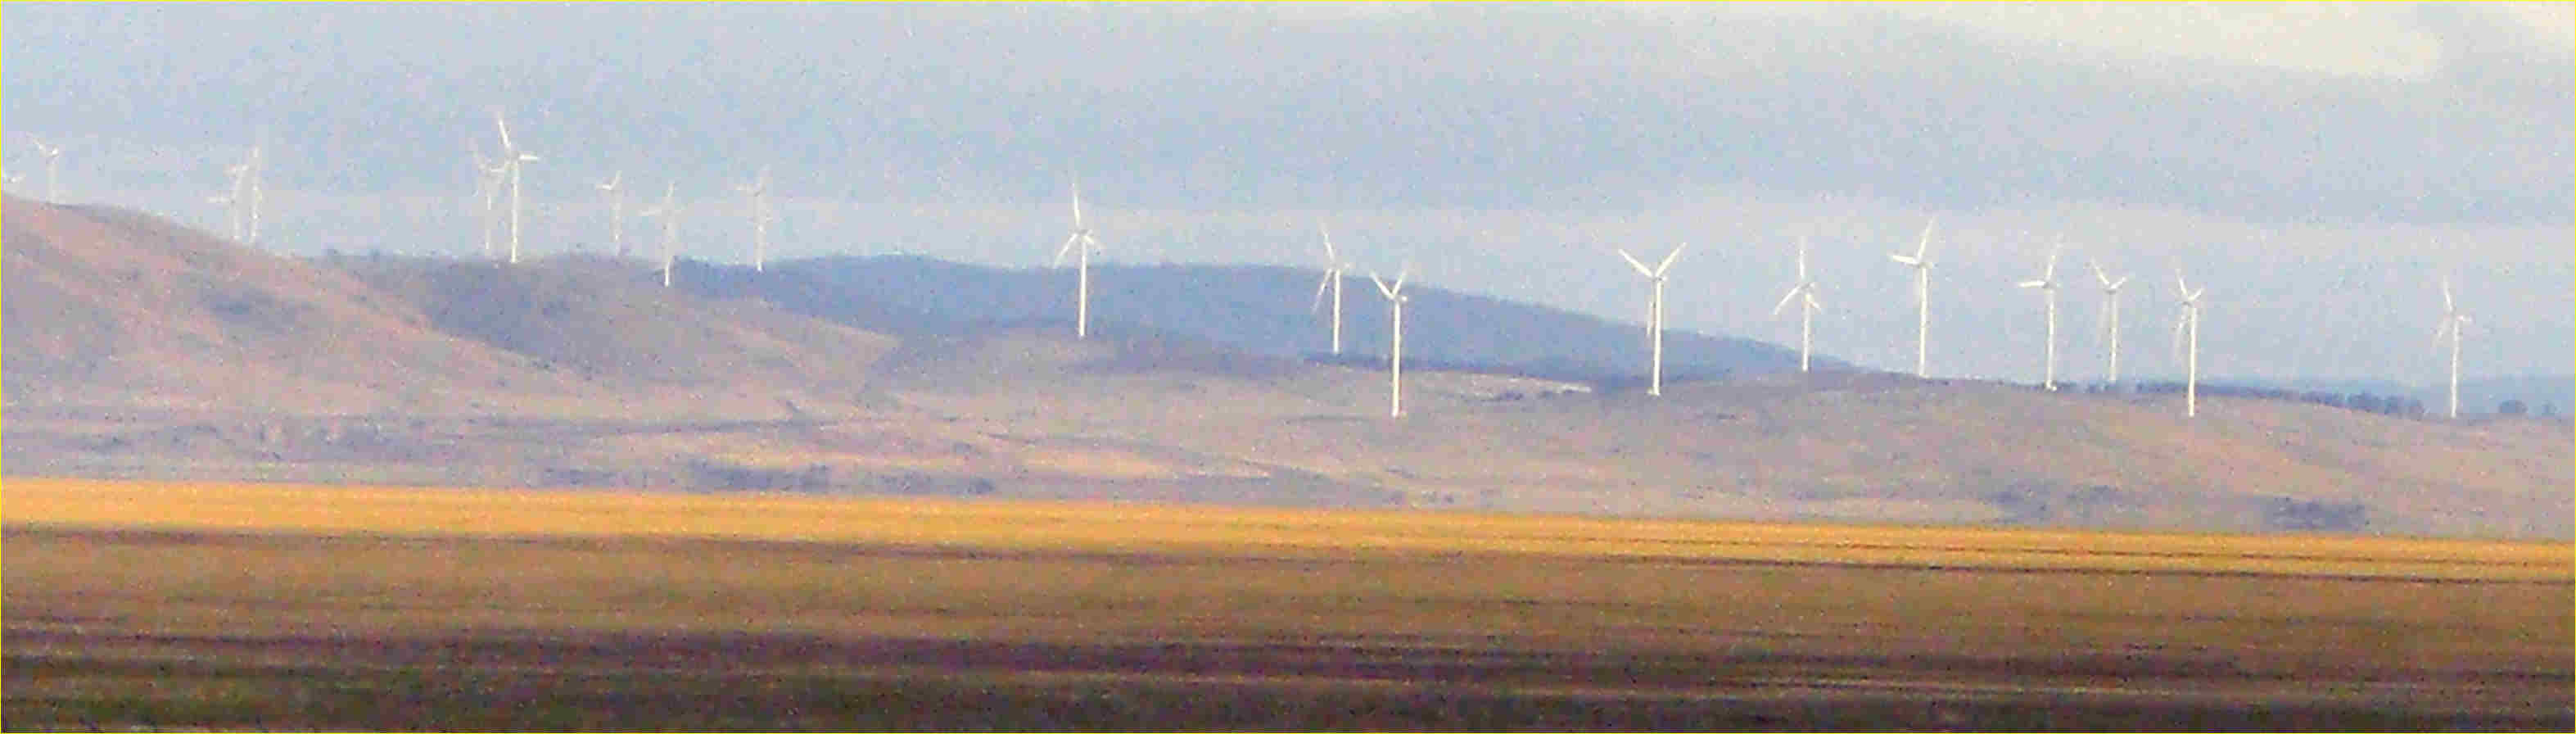 Wind turbines - Lake George